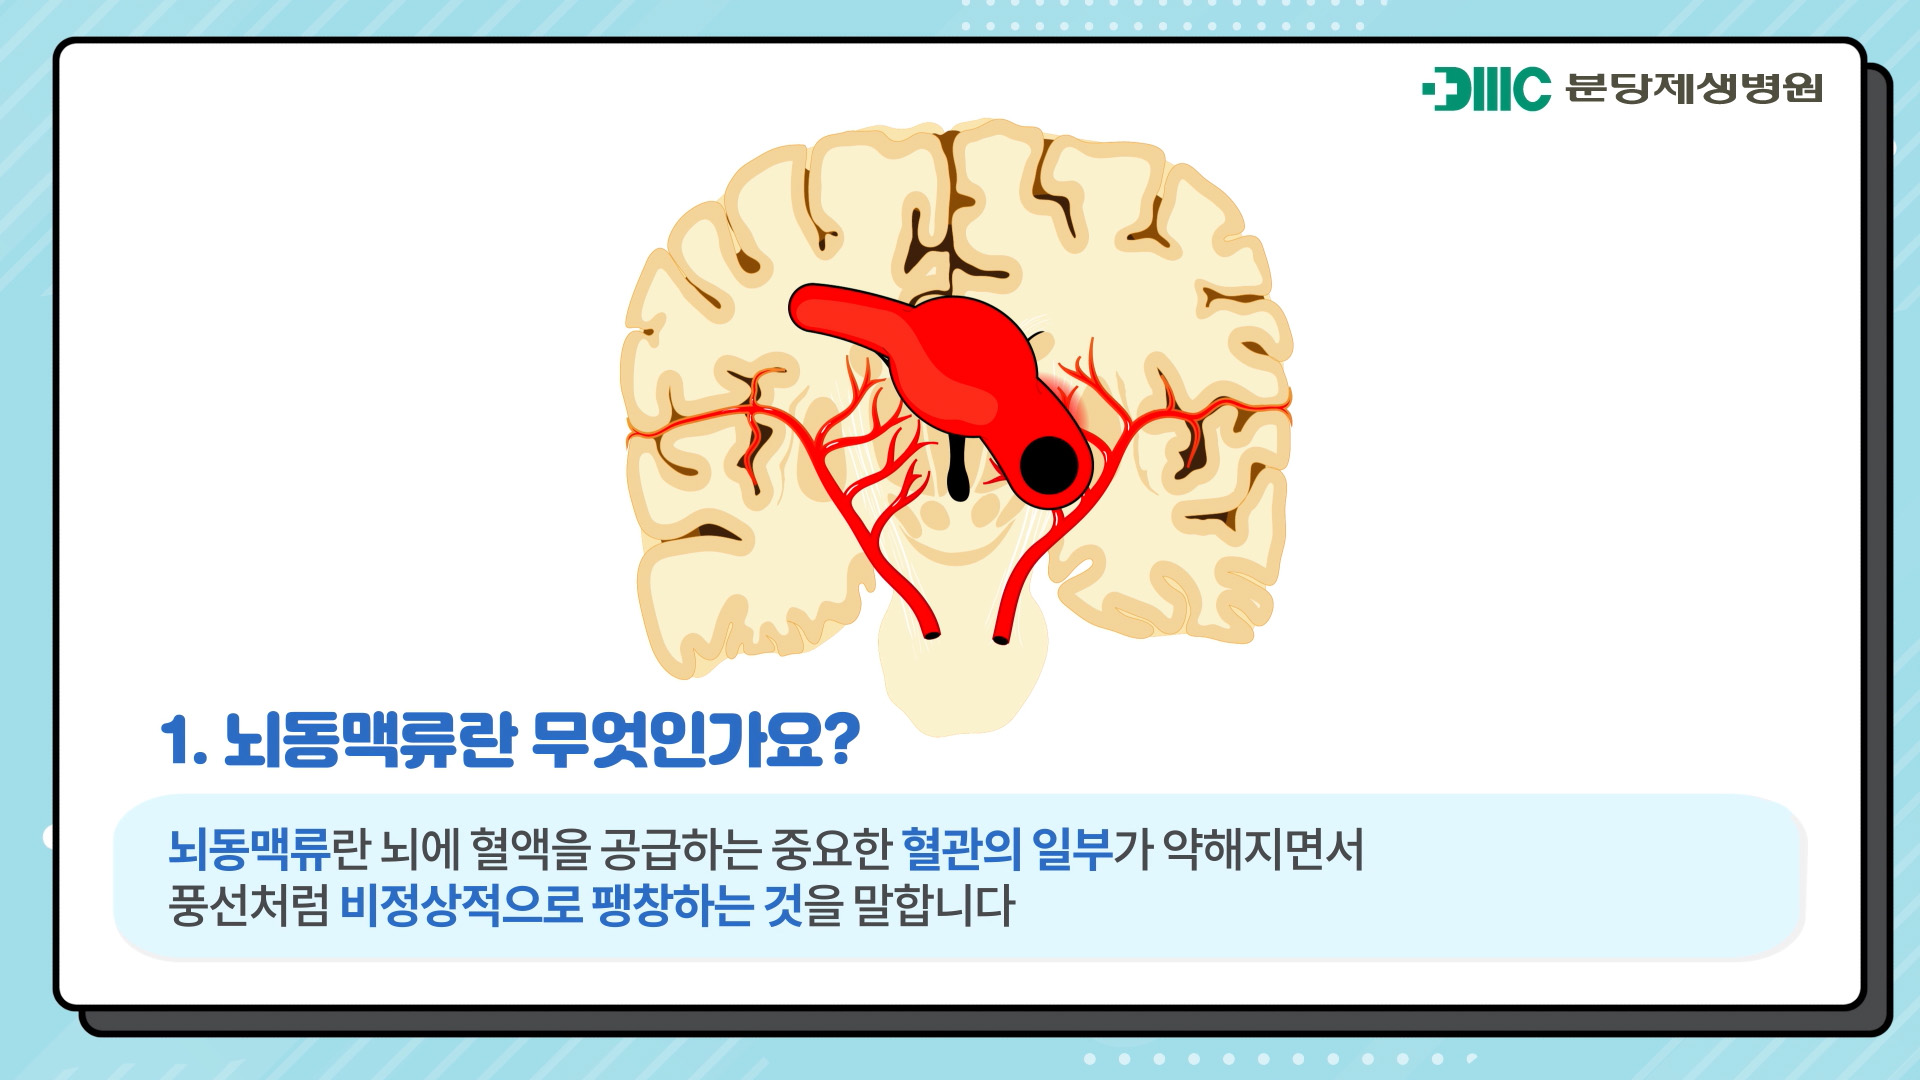 뇌동맥류란 무엇인가?